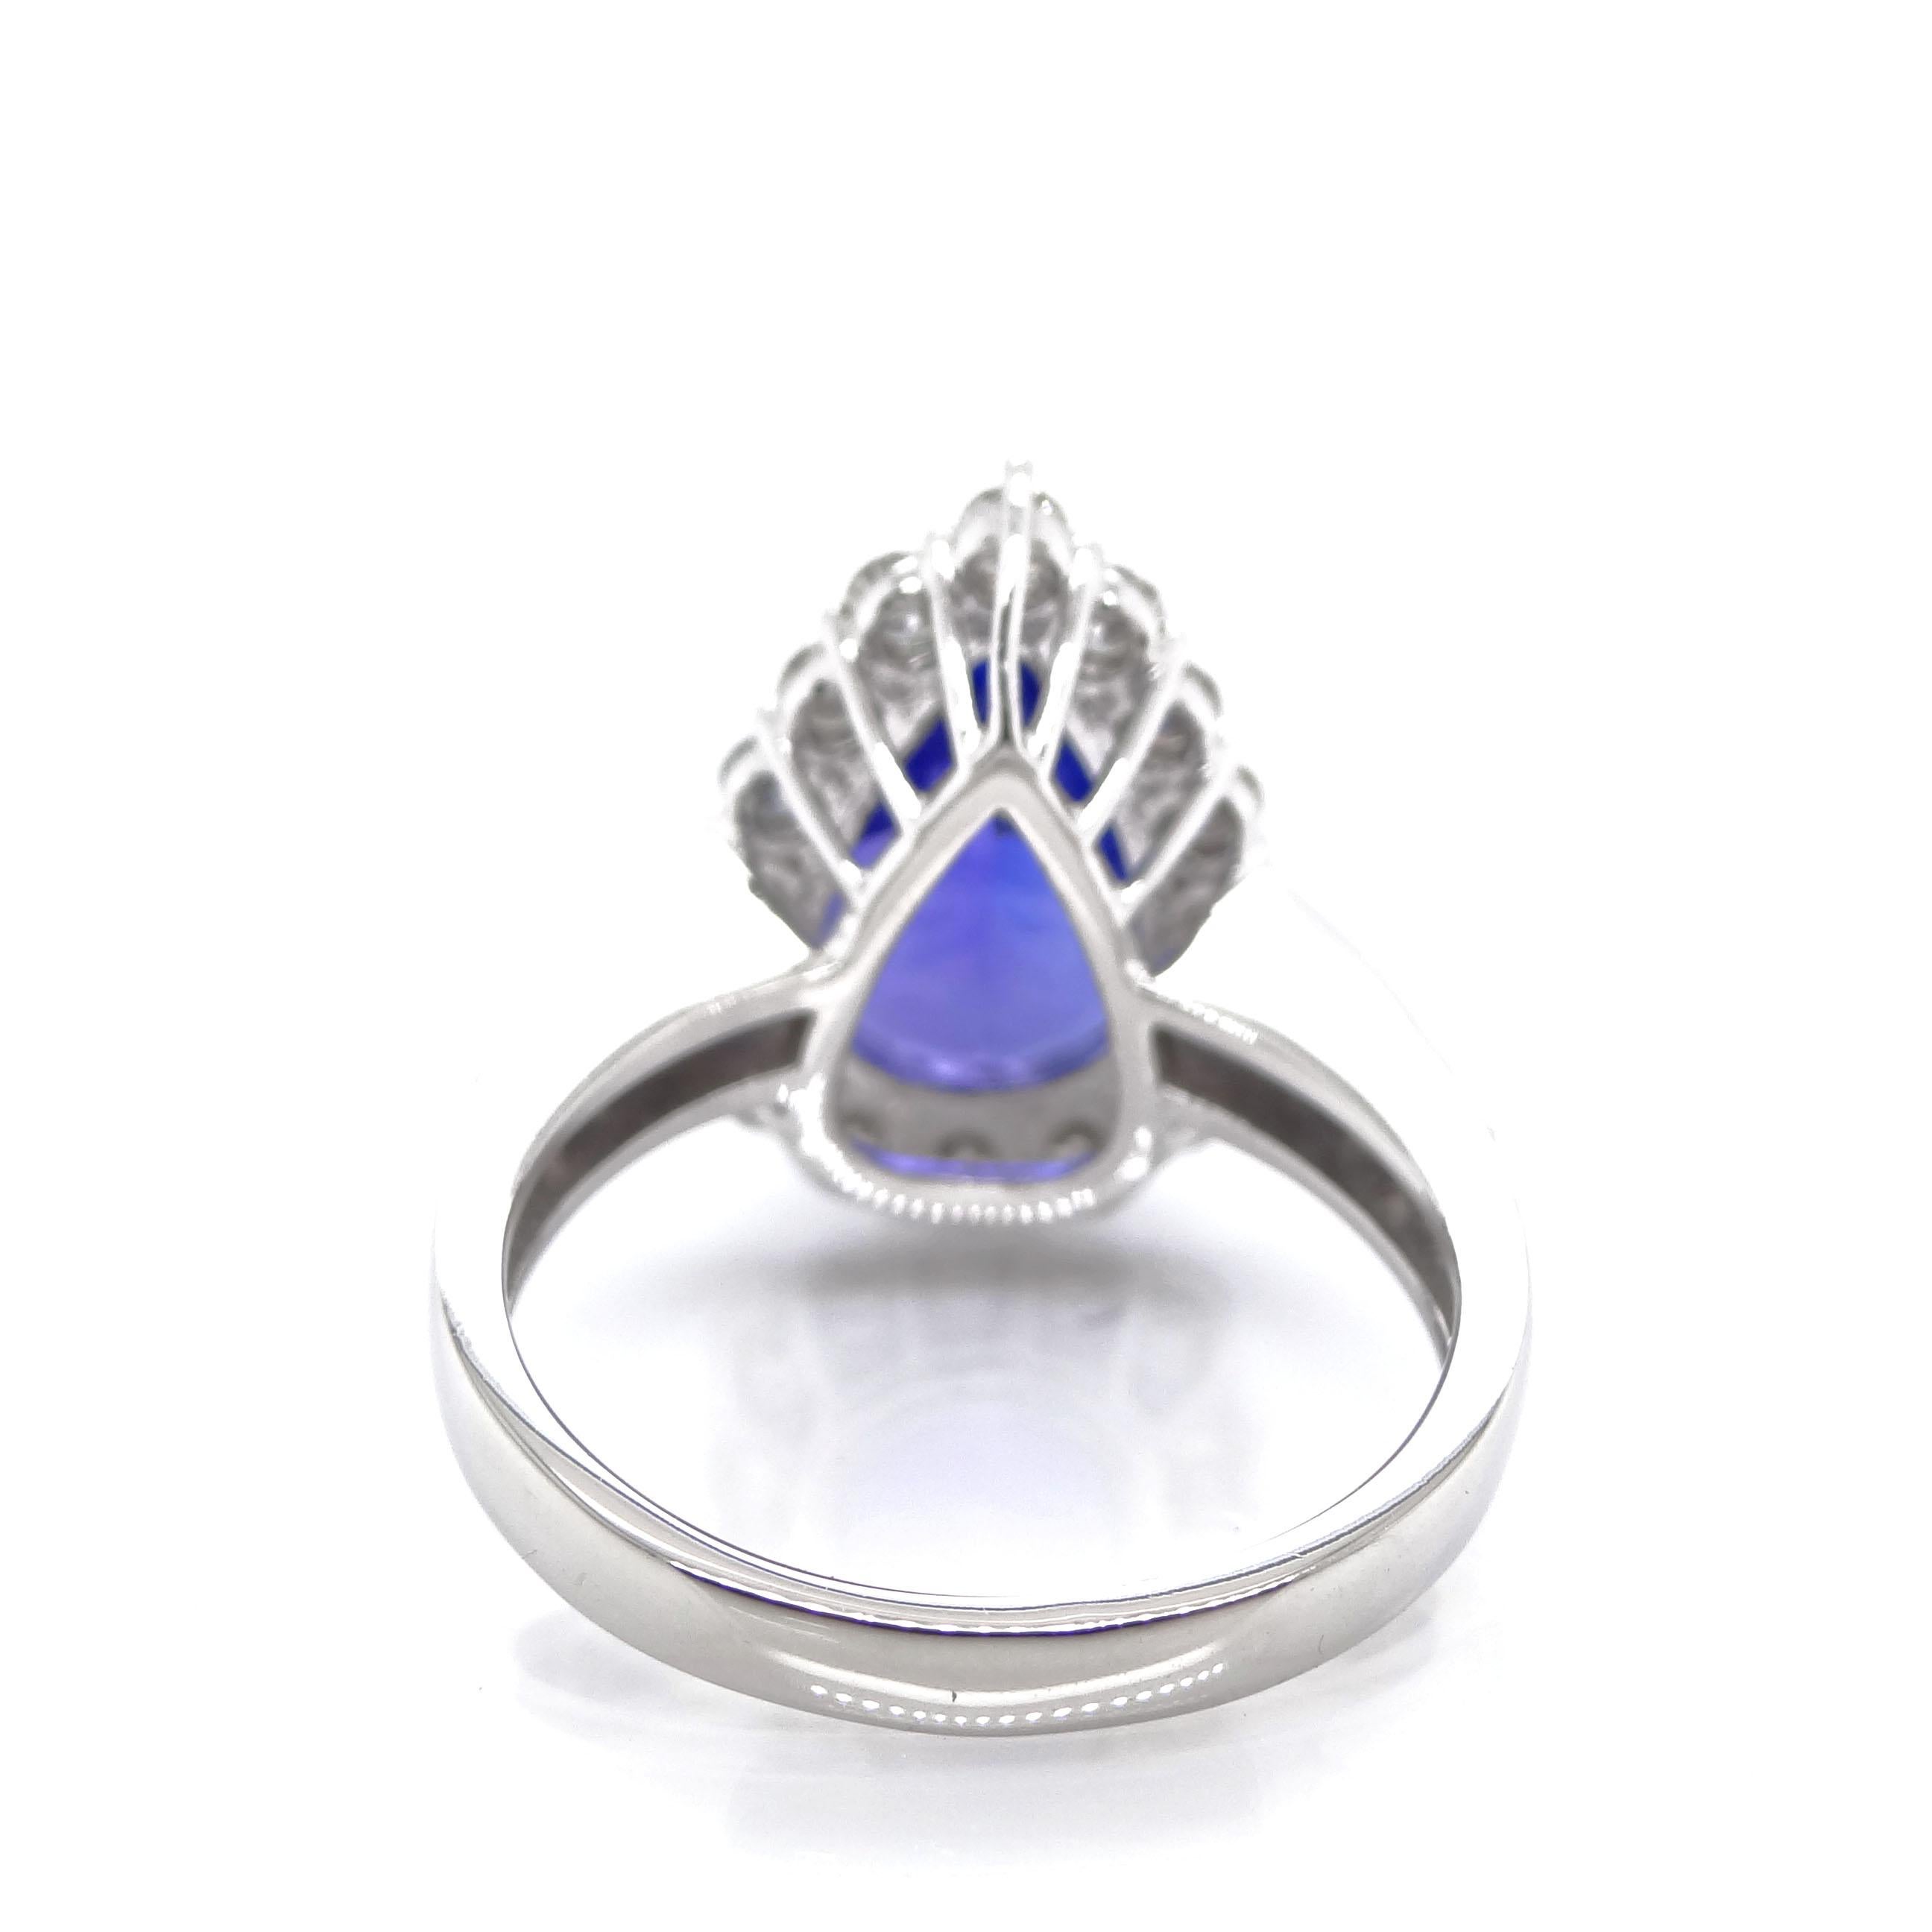 Modern 4.43 Carat Pear-Shaped Tanzanite Diamond Engagement Ring Set in Platinum